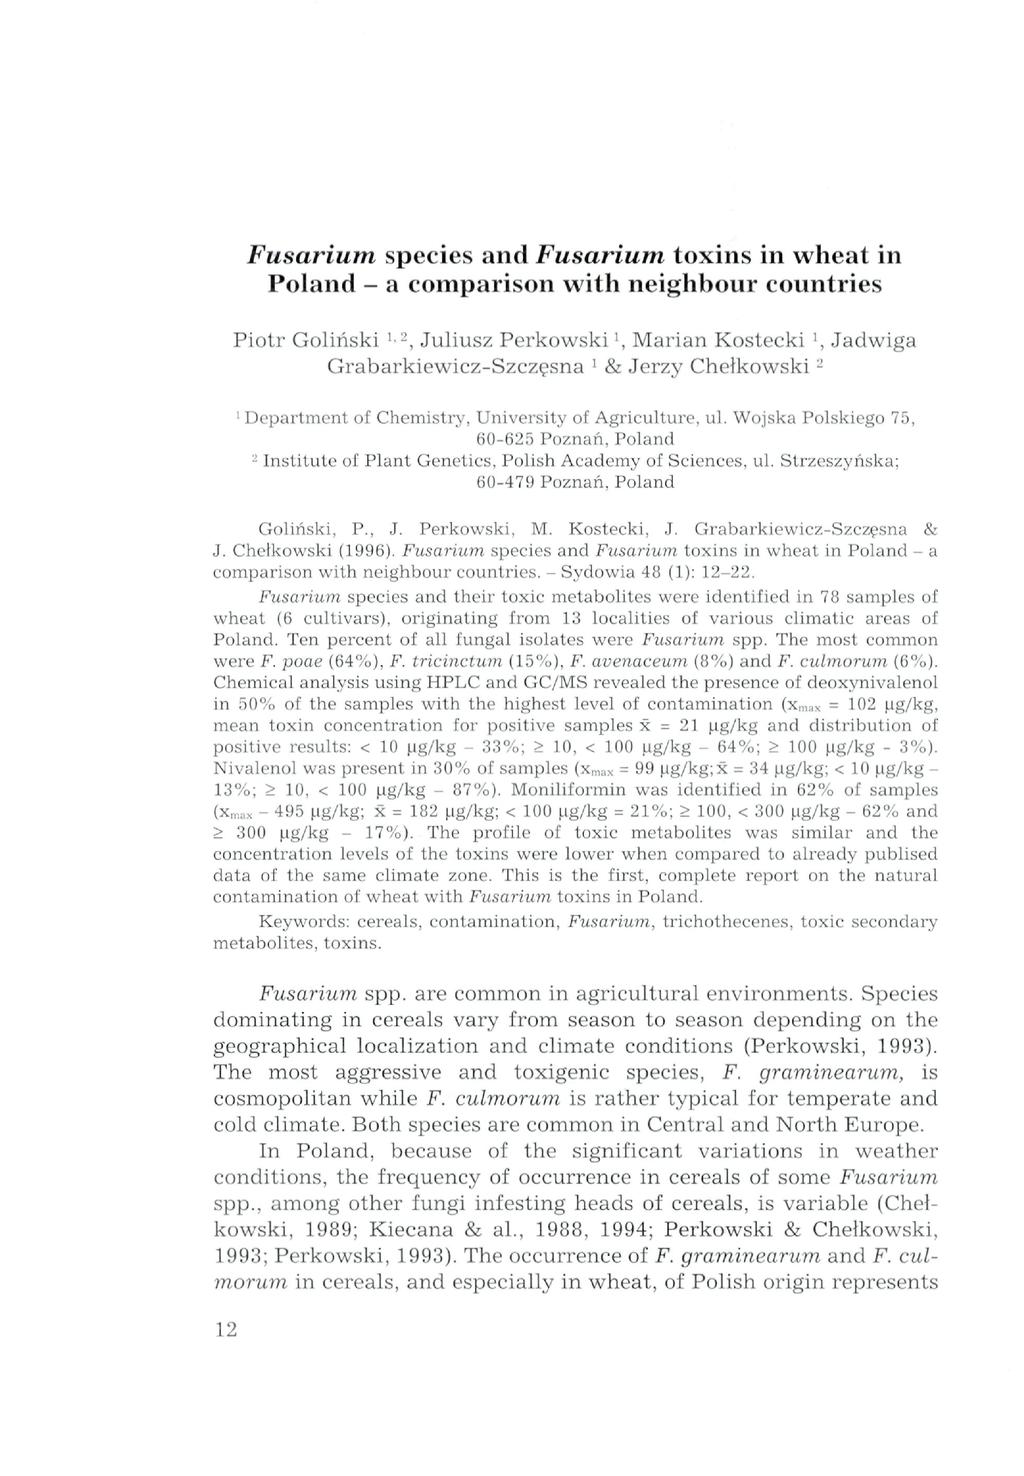 Fusarium species and Fusarium toxins in wheat in Poland - a comparison with neighbour countries Piolr Goliriski ' -, Juliusz Perkowski', Marian Kostecki ', Jadwiga Grabarkiewicz-Szczesna ' & Jerzy